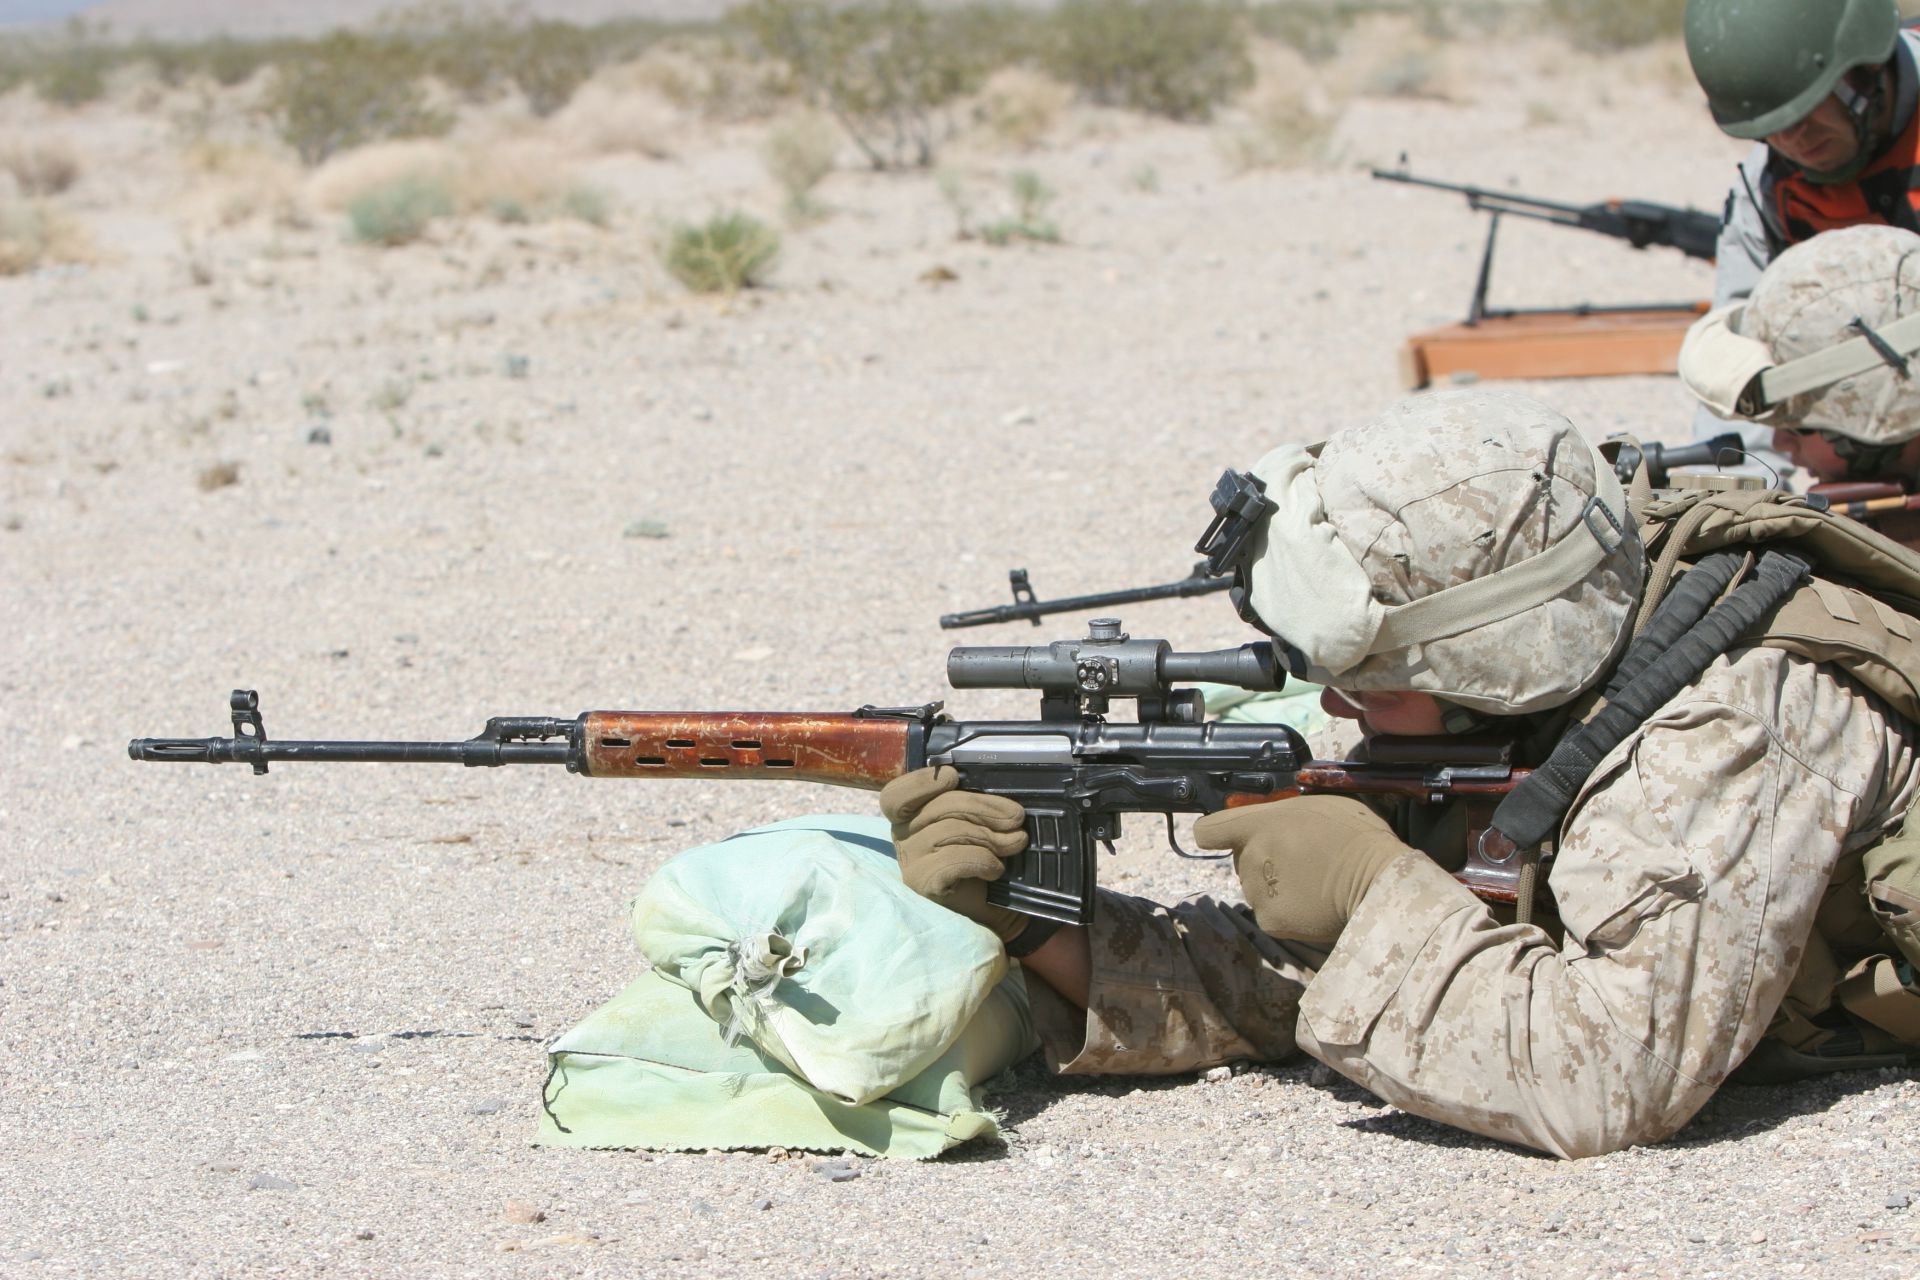 спецназ солдат пистолет военные винтовка оружие войны армия битва пулемет боеприпасы камуфляж человек униформа боевой снайпер безопасности нападение силу